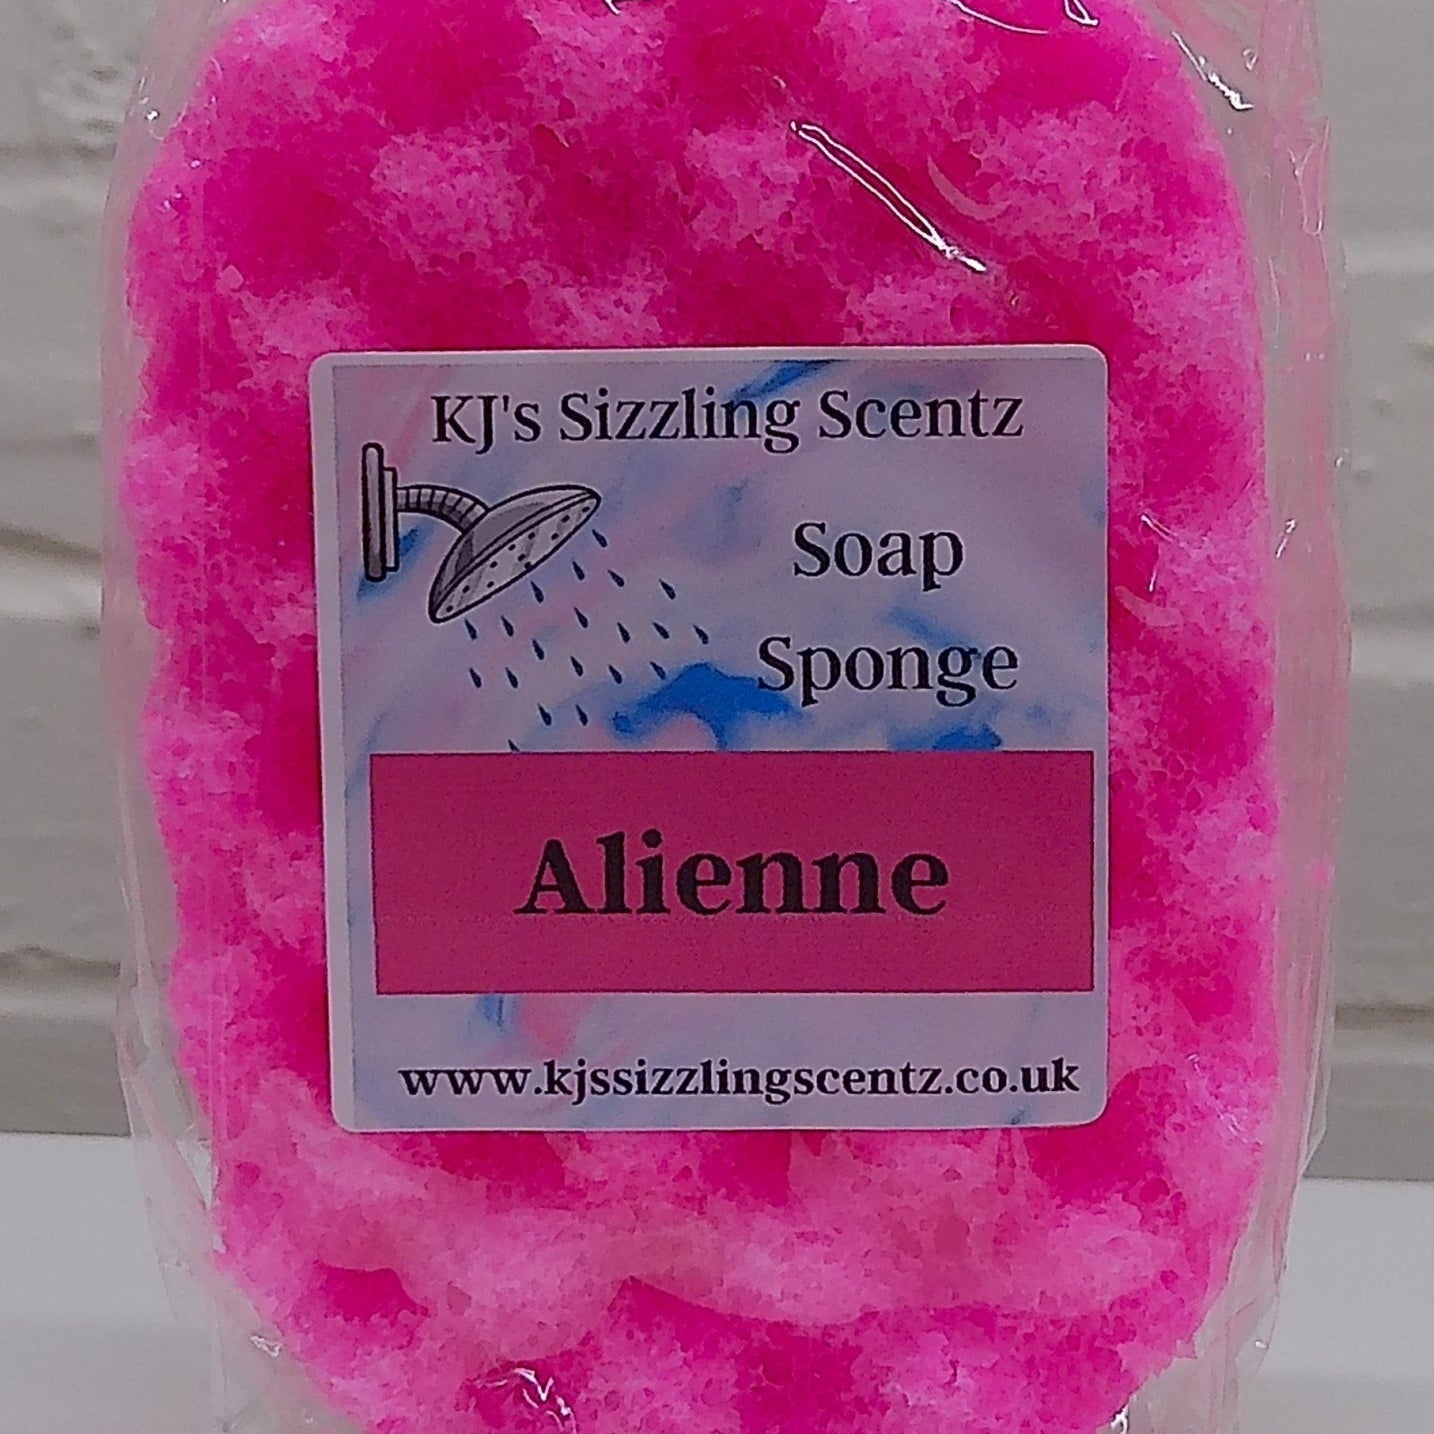 Soap Sponge Collection - KJ's Sizzling Scentz